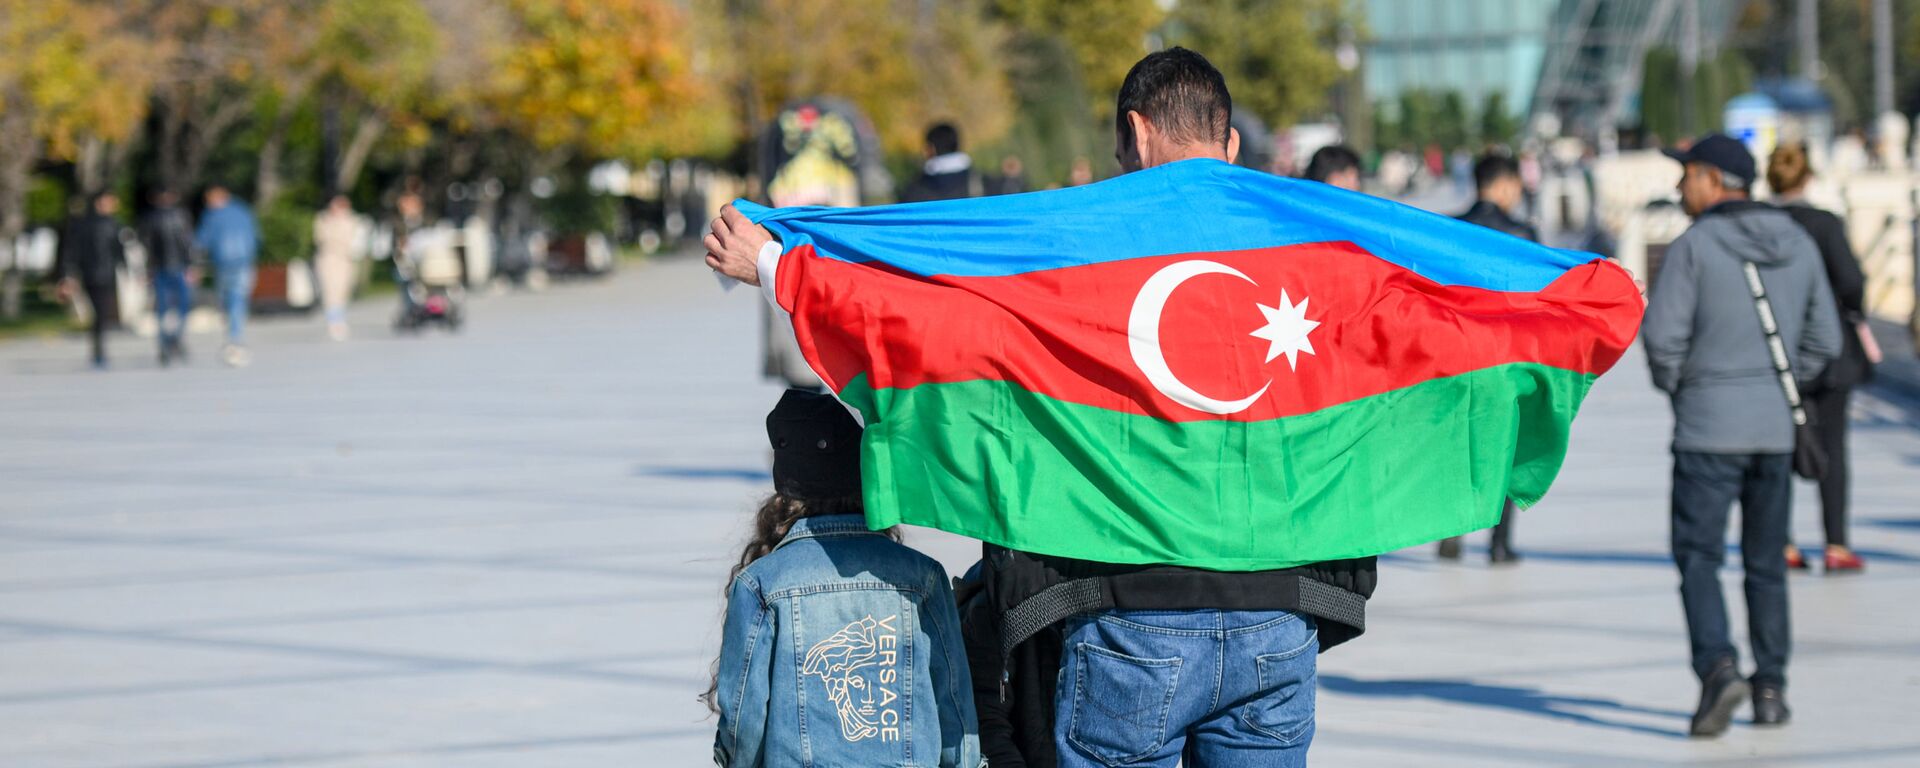 Мужчина с флагом Азербайджана, фото из архива - Sputnik Азербайджан, 1920, 25.02.2022